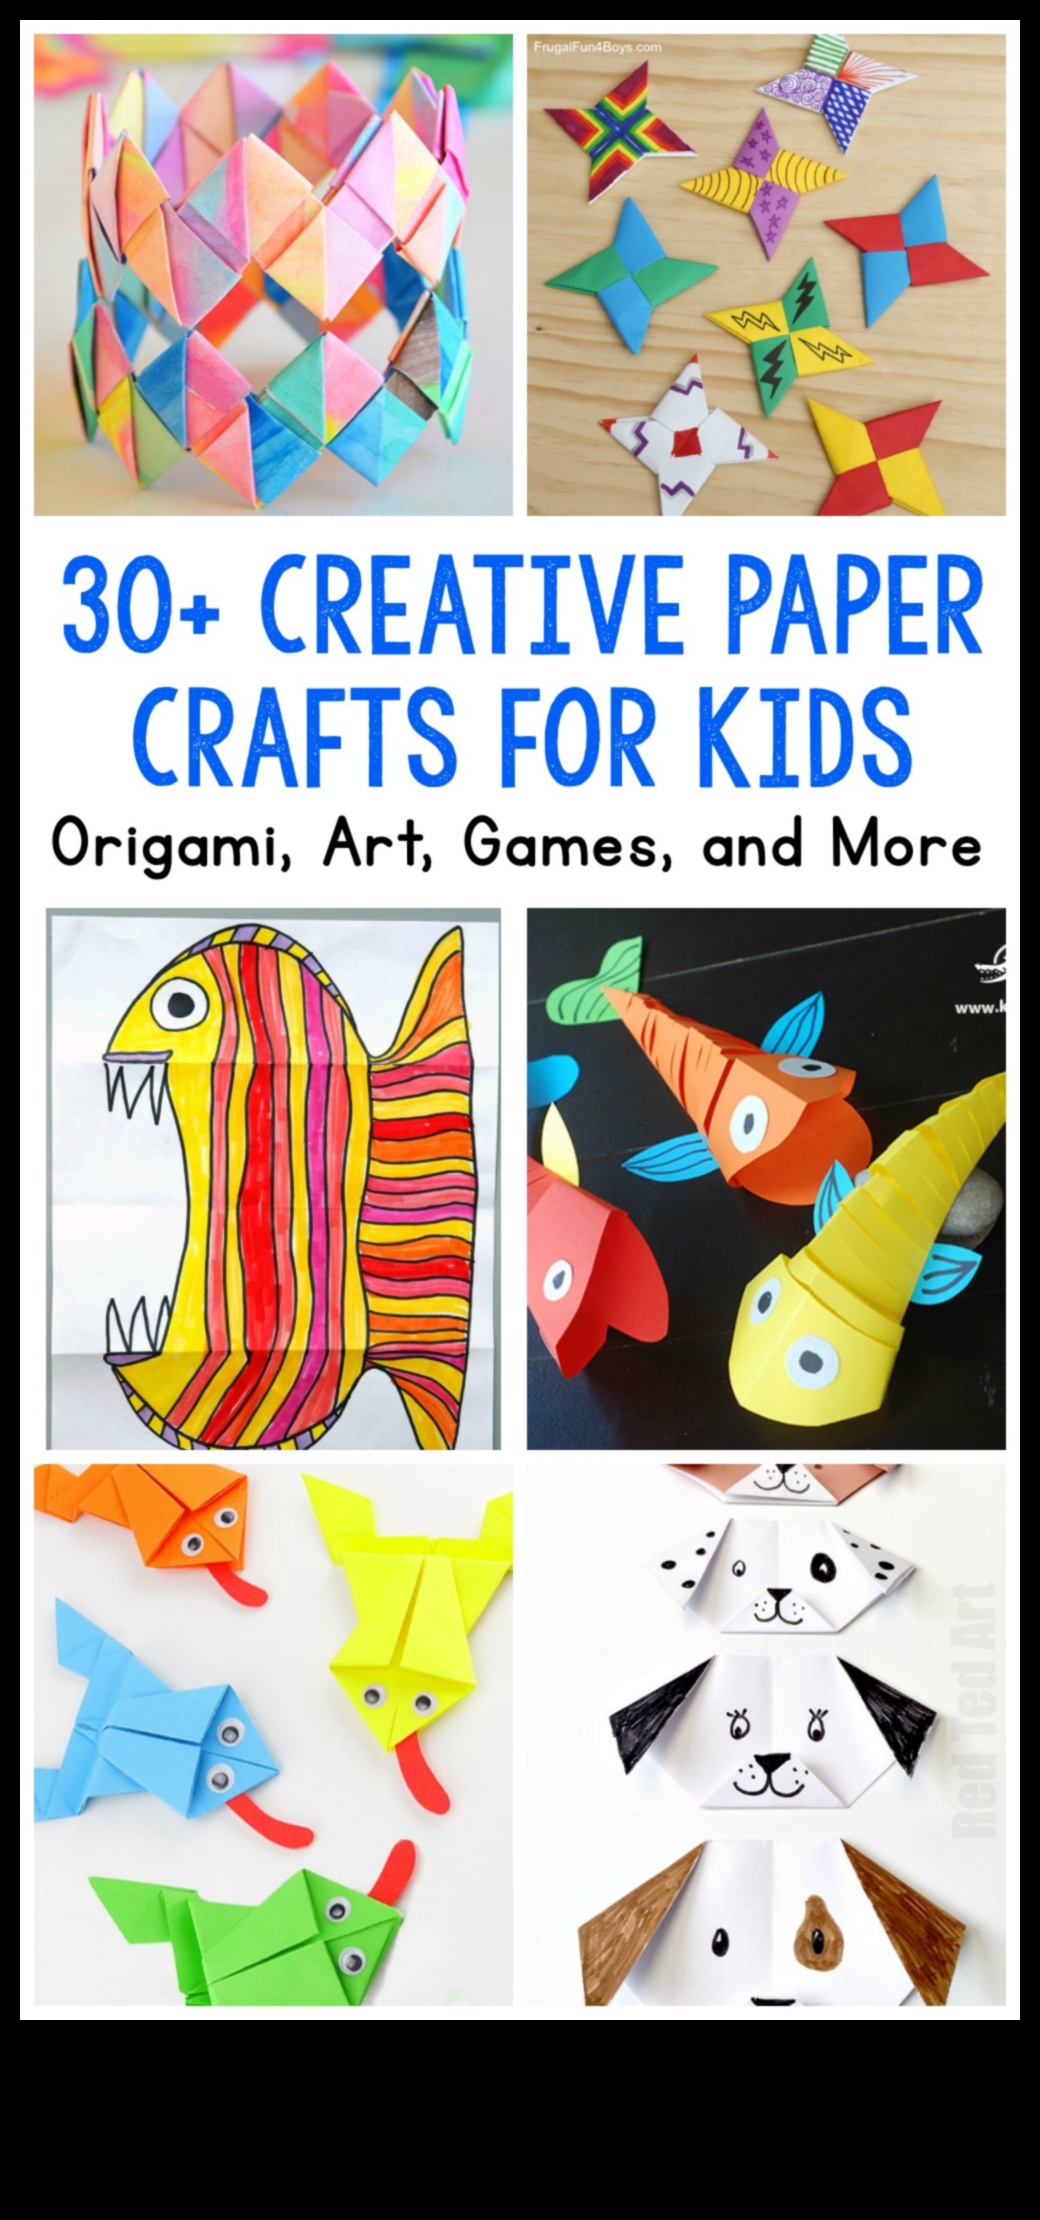 Papercraft Karma Medyanın Keyfi: Sanatsal Yaratımlar için Malzemeleri Harmanlama